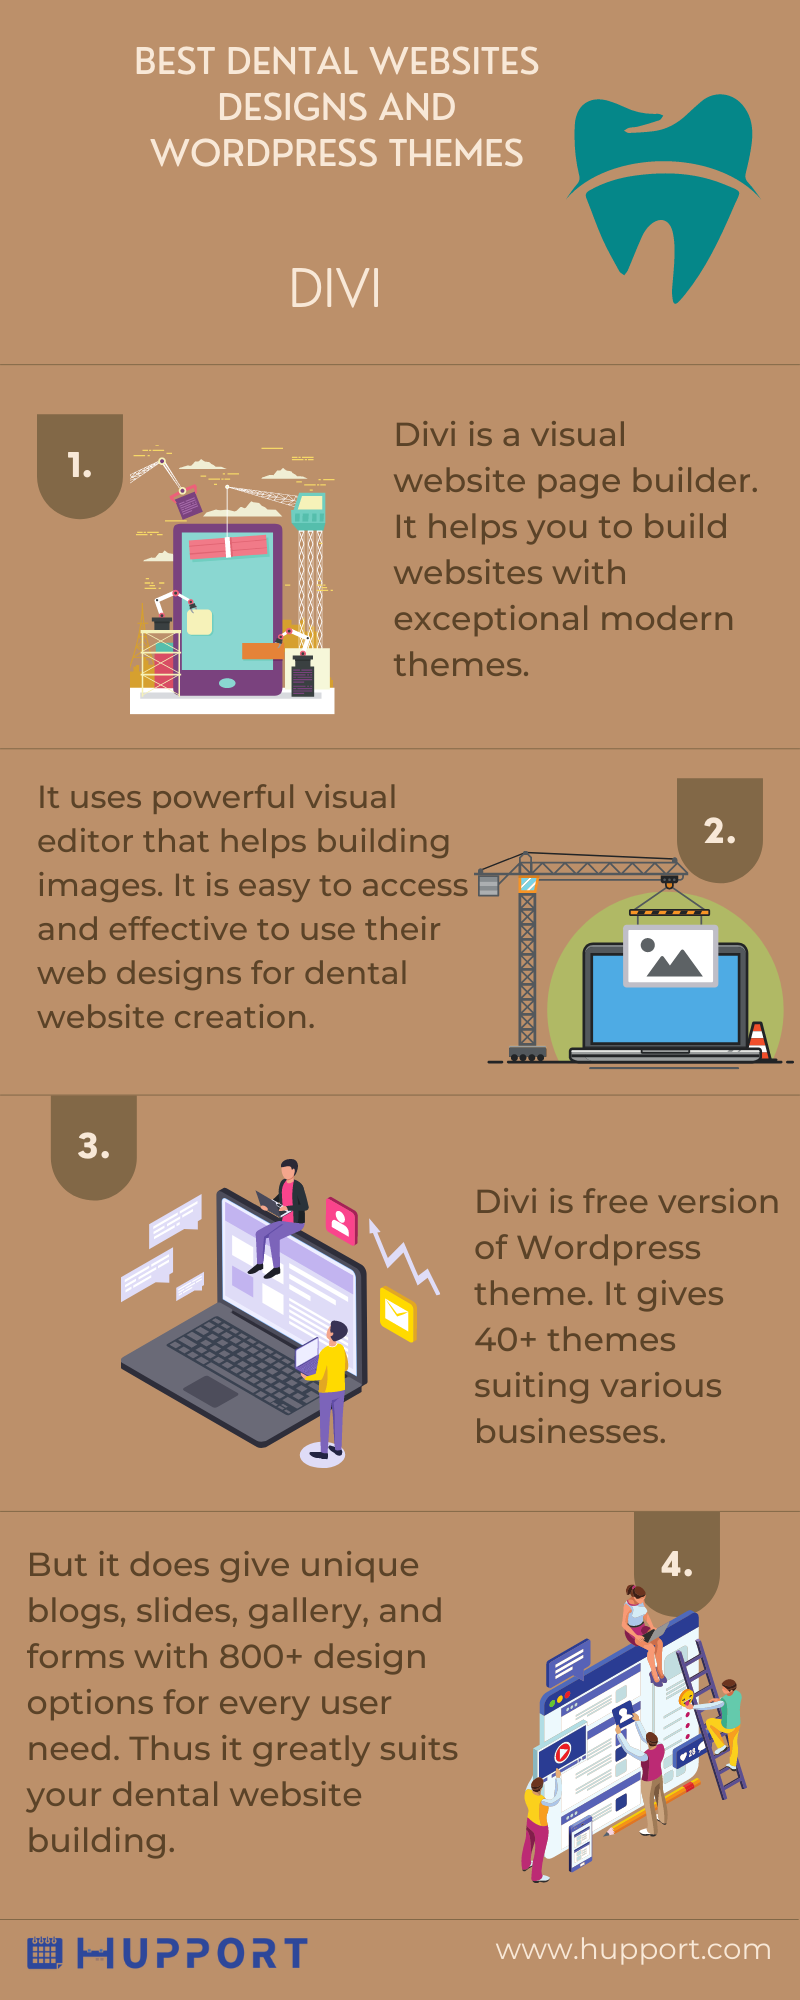 Best dental websites designs : Divi